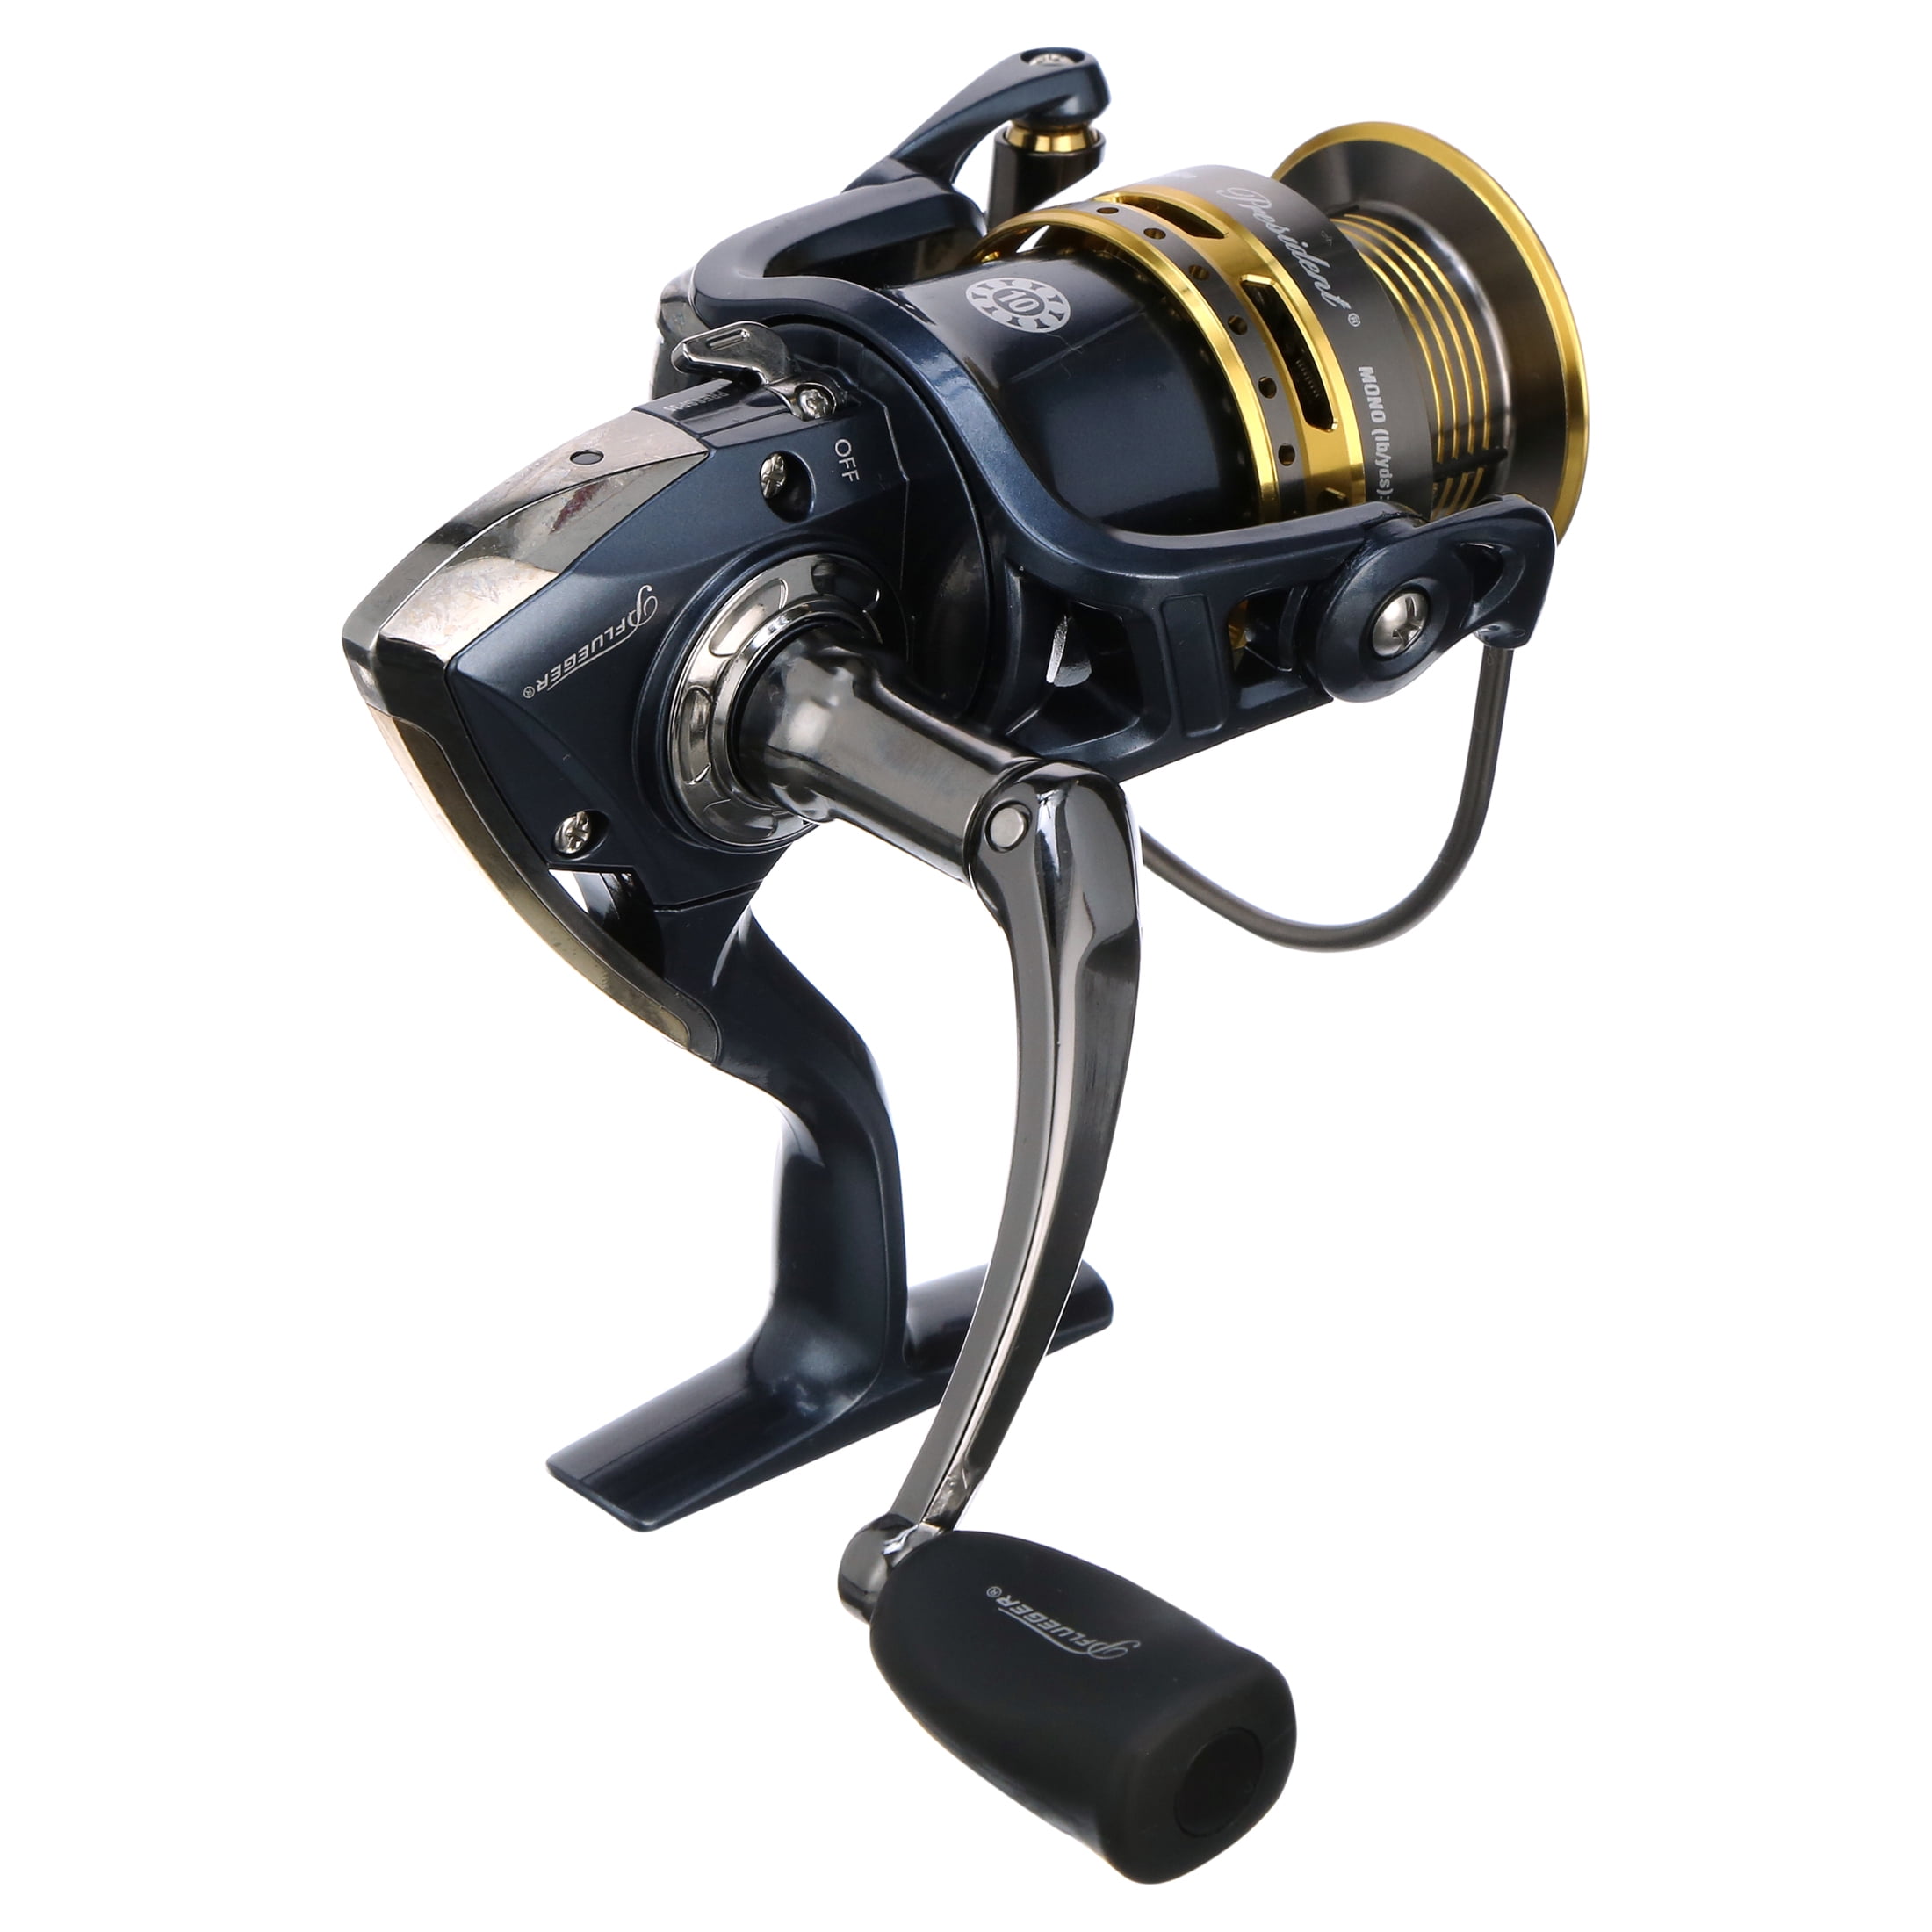 Pflueger President XT presxtsp20 Spinning Fishing Reel - Size 20 -  Multicolor 43388412690